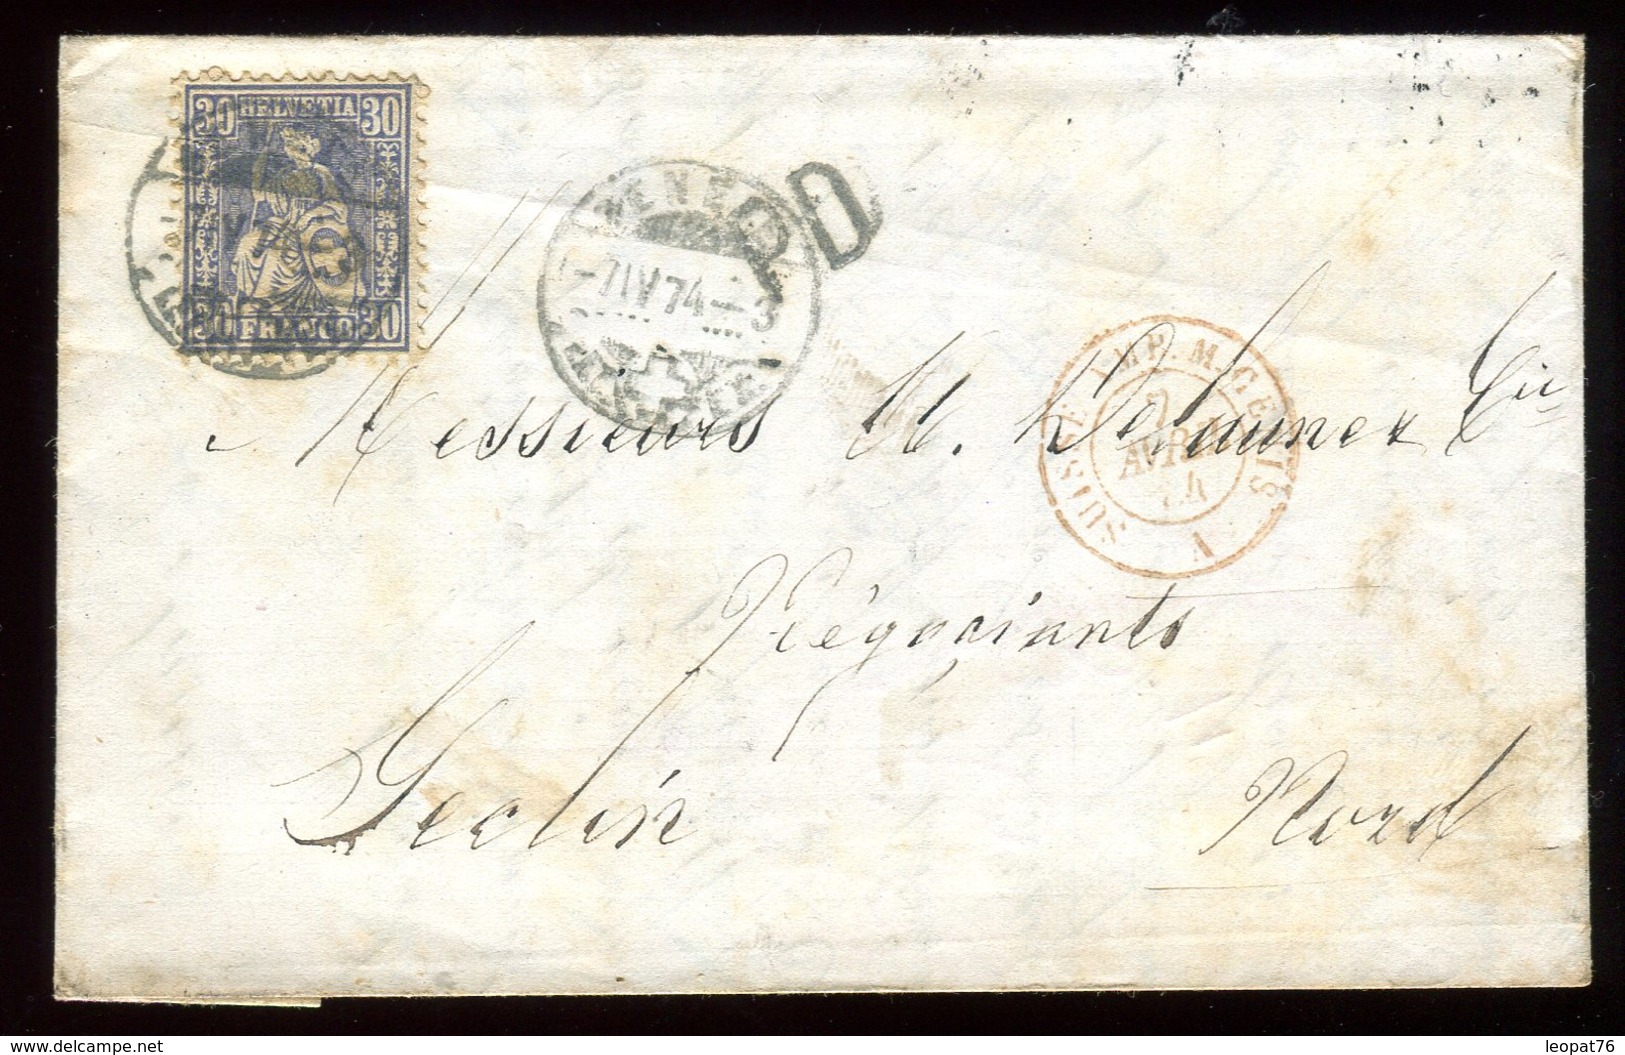 Suisse - Lettre Avec Texte De Genève Pour Seclin En 1874 - Réf O6 - Storia Postale